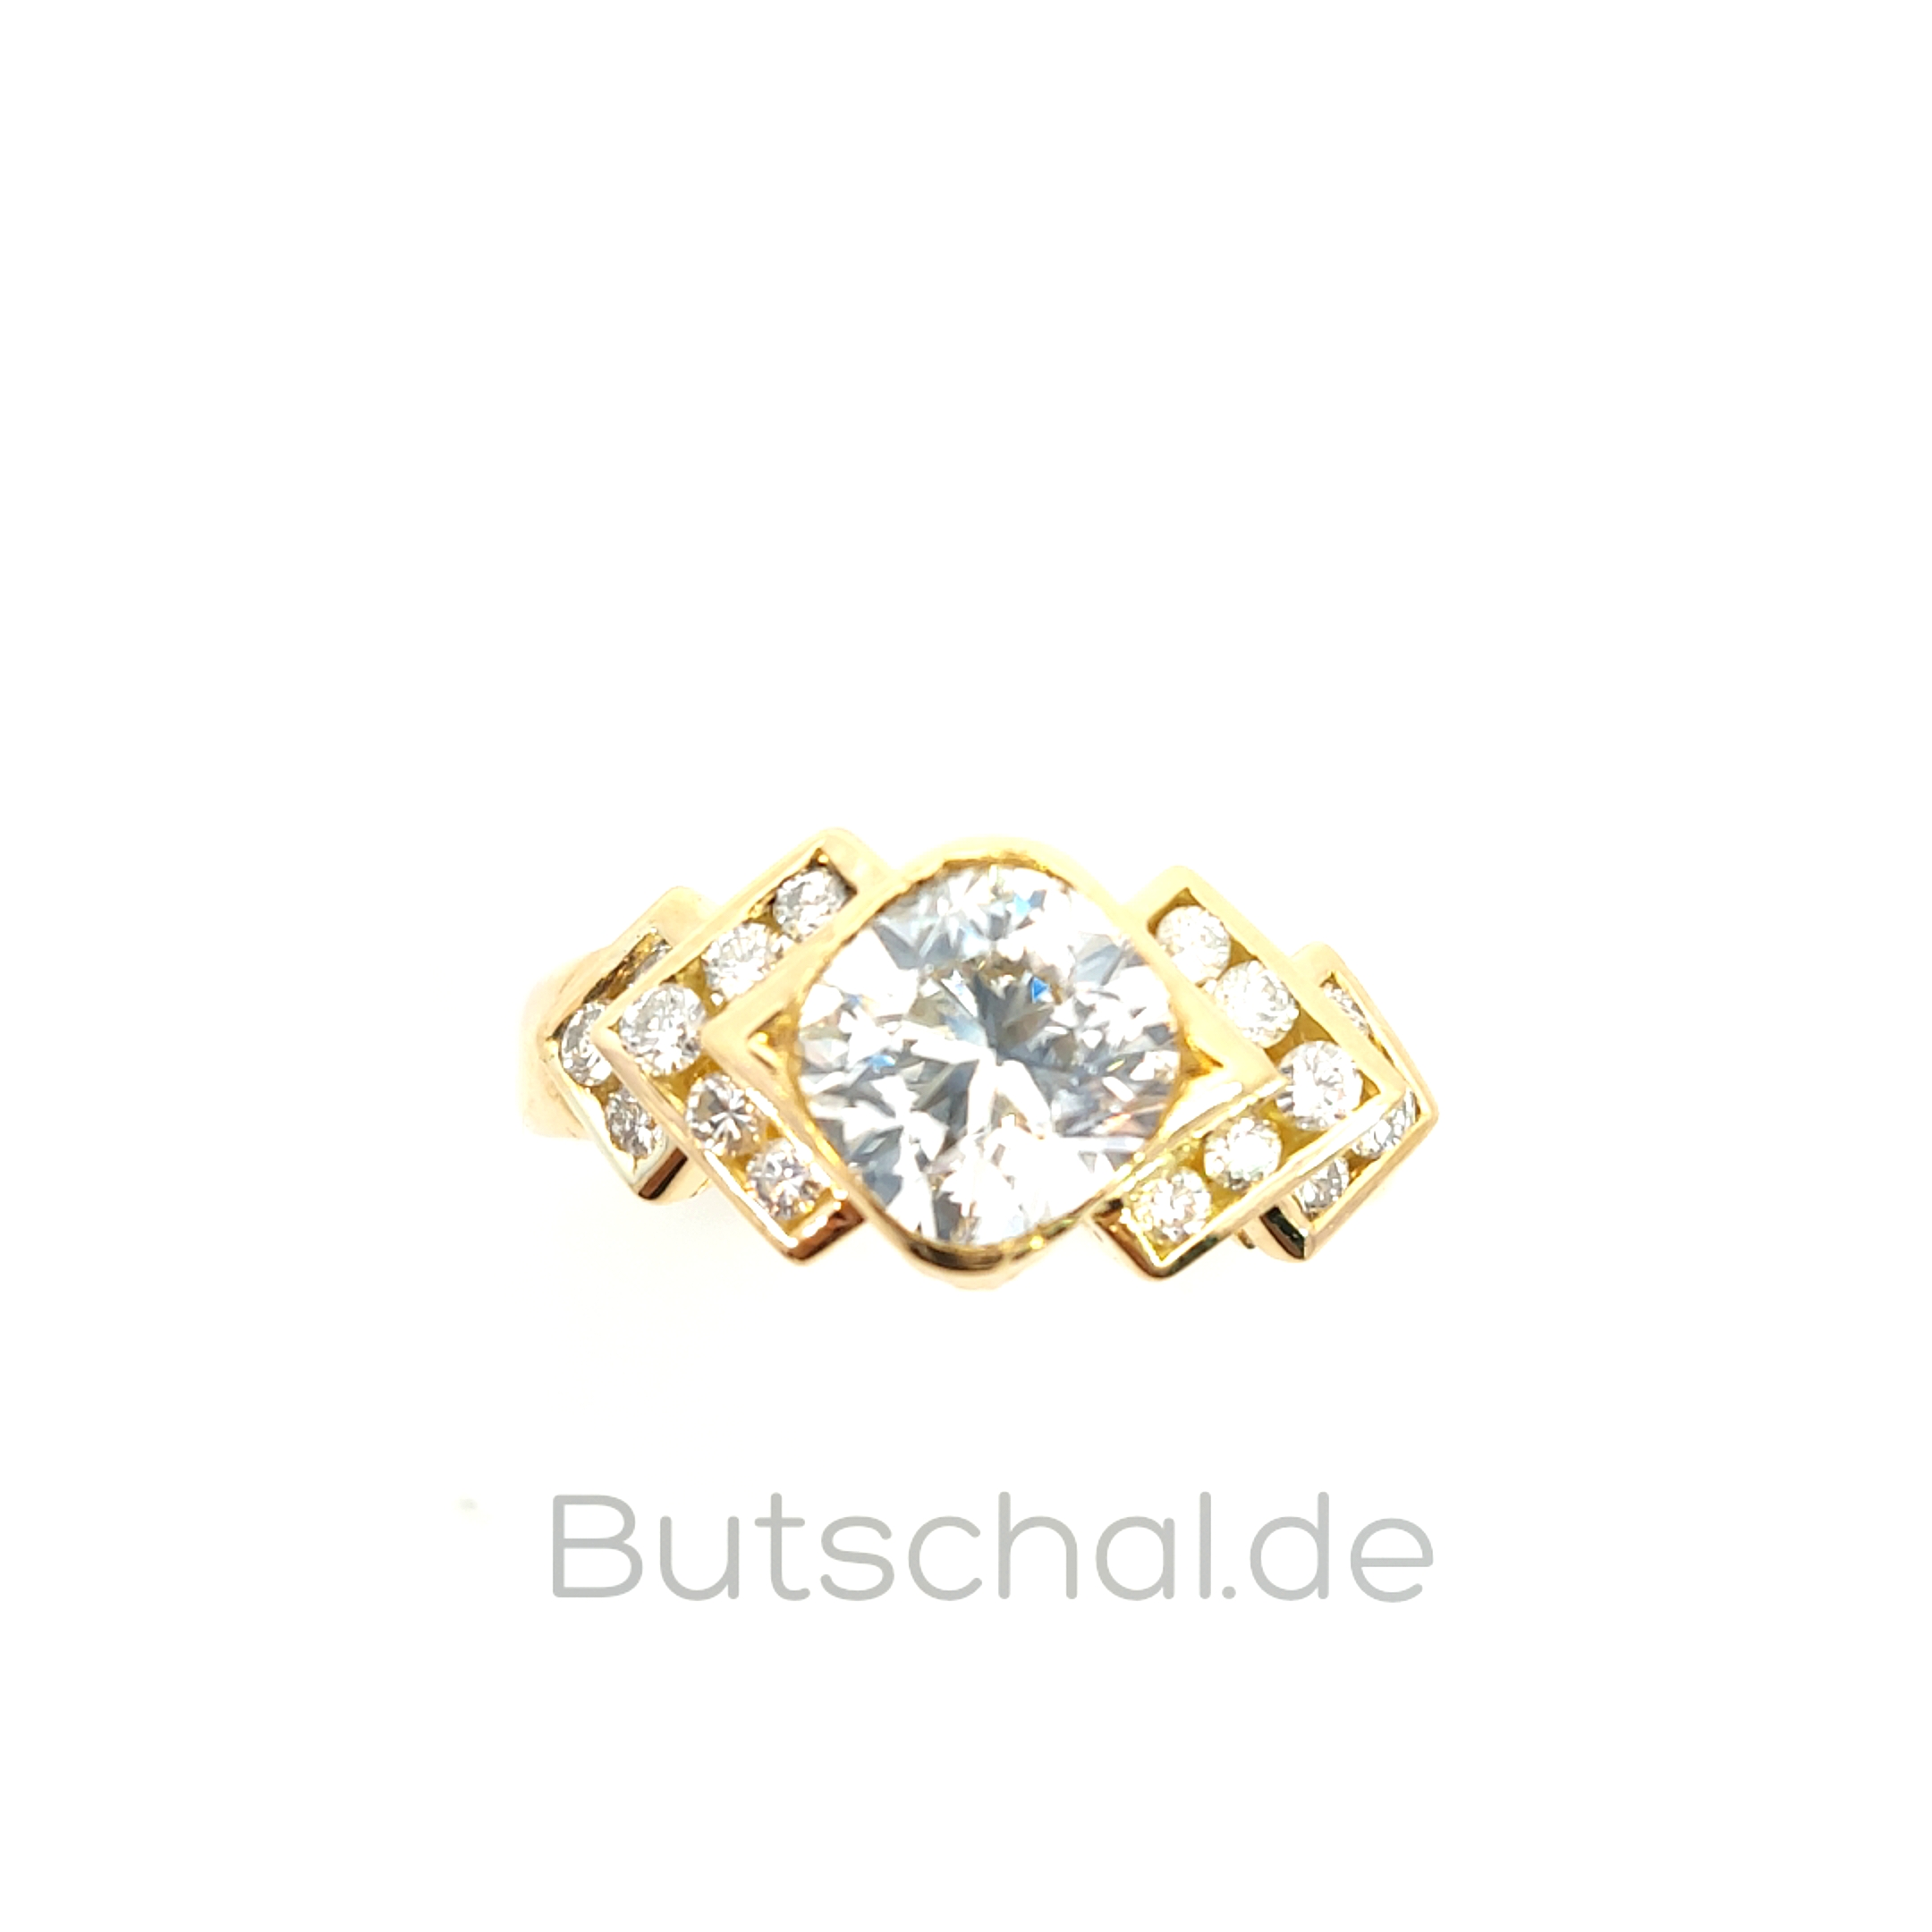 Weissgold Brillantring als Bandring in 18 kt mit 1,57ct Brillant | Diamantring